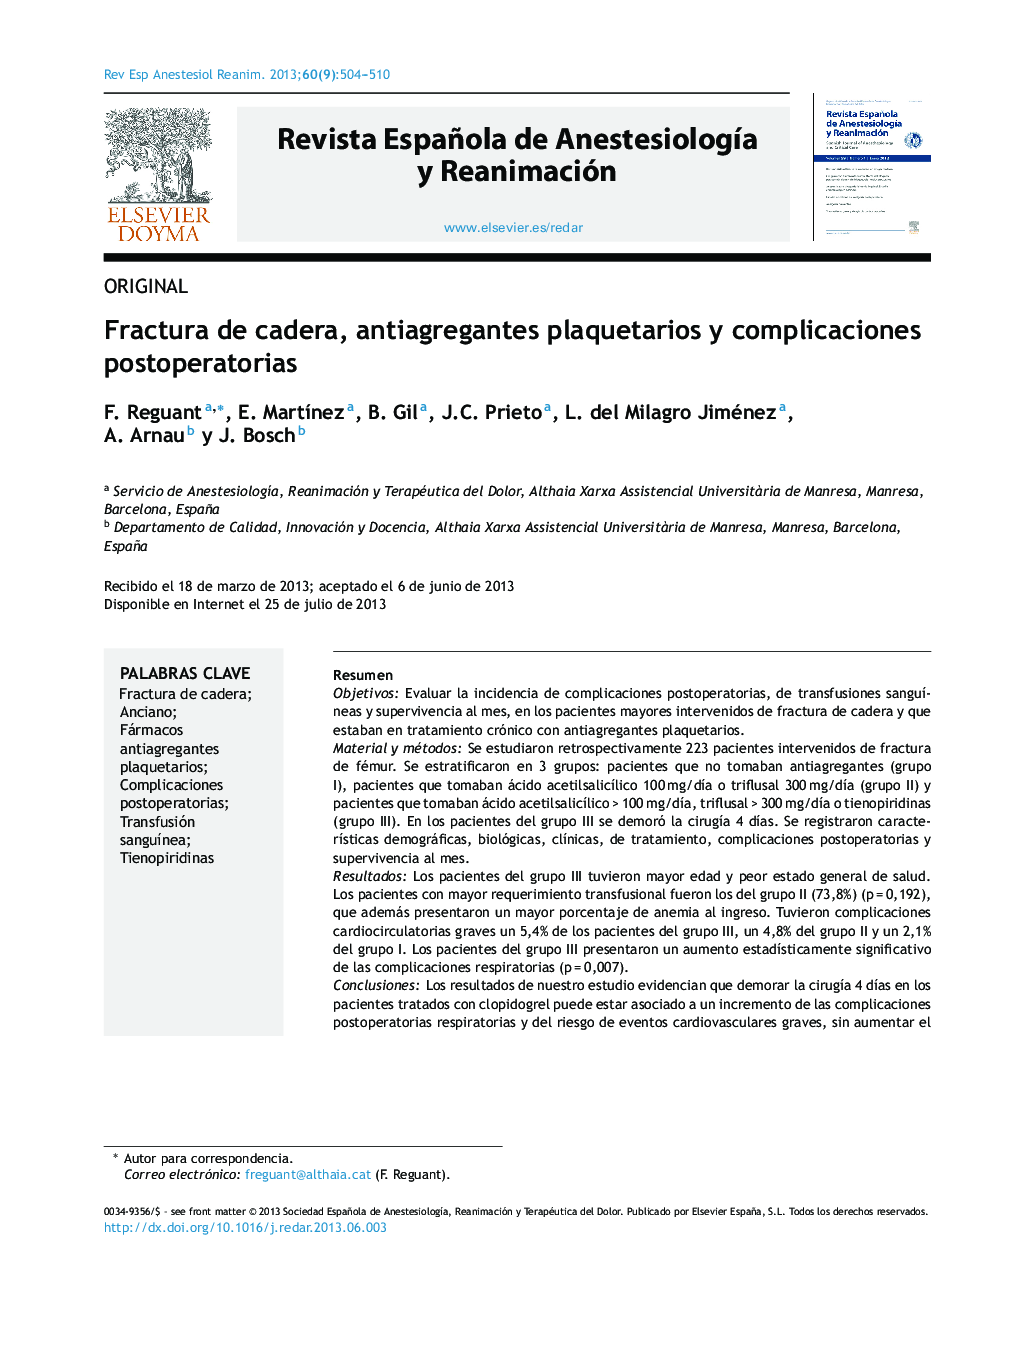 Fractura de cadera, antiagregantes plaquetarios y complicaciones postoperatorias